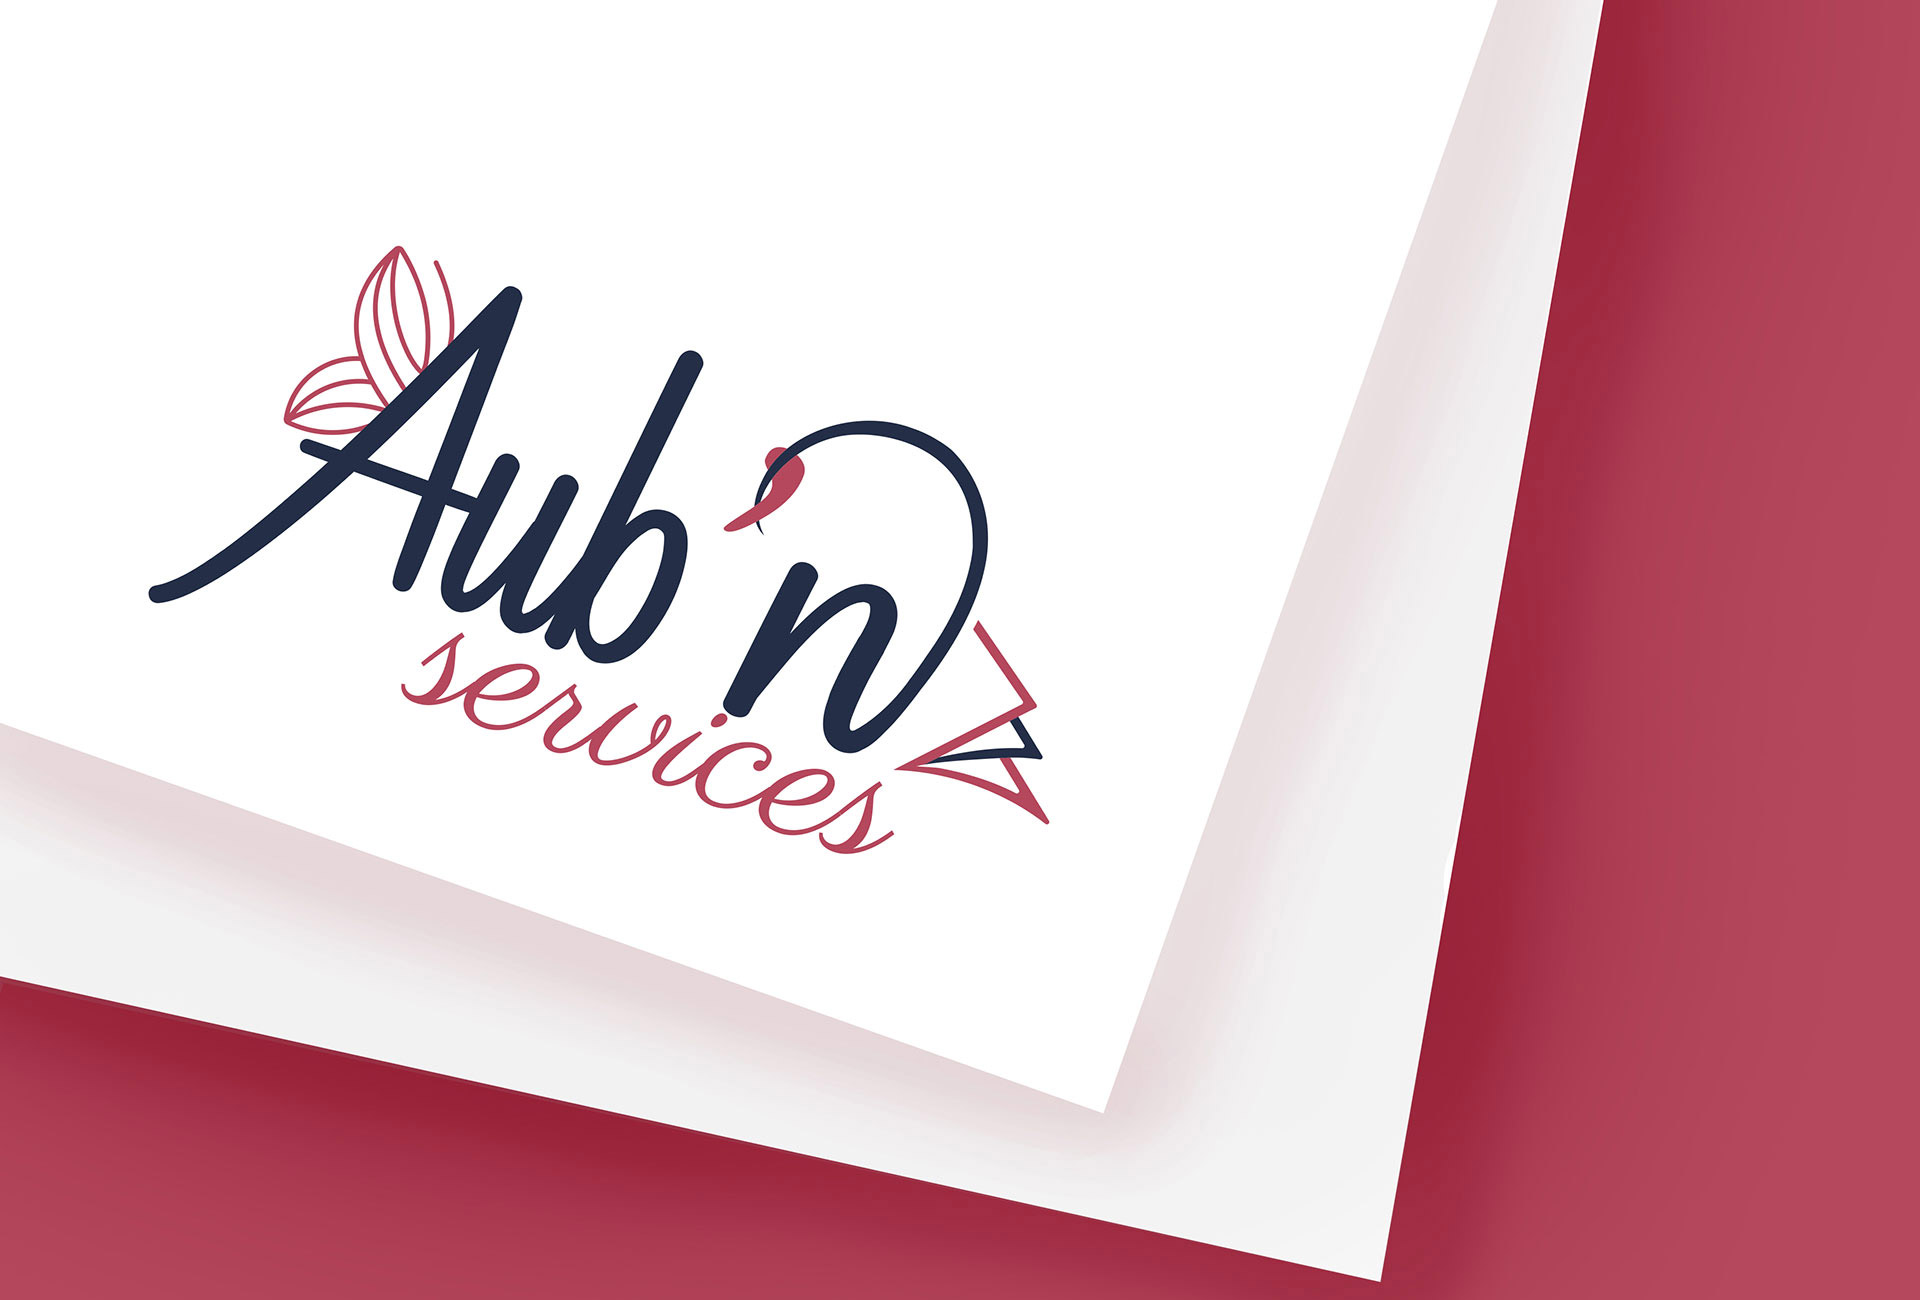 Mockup montrant l'insertion du logo "Aubn services" sur un bas de page papier - agence Troyes